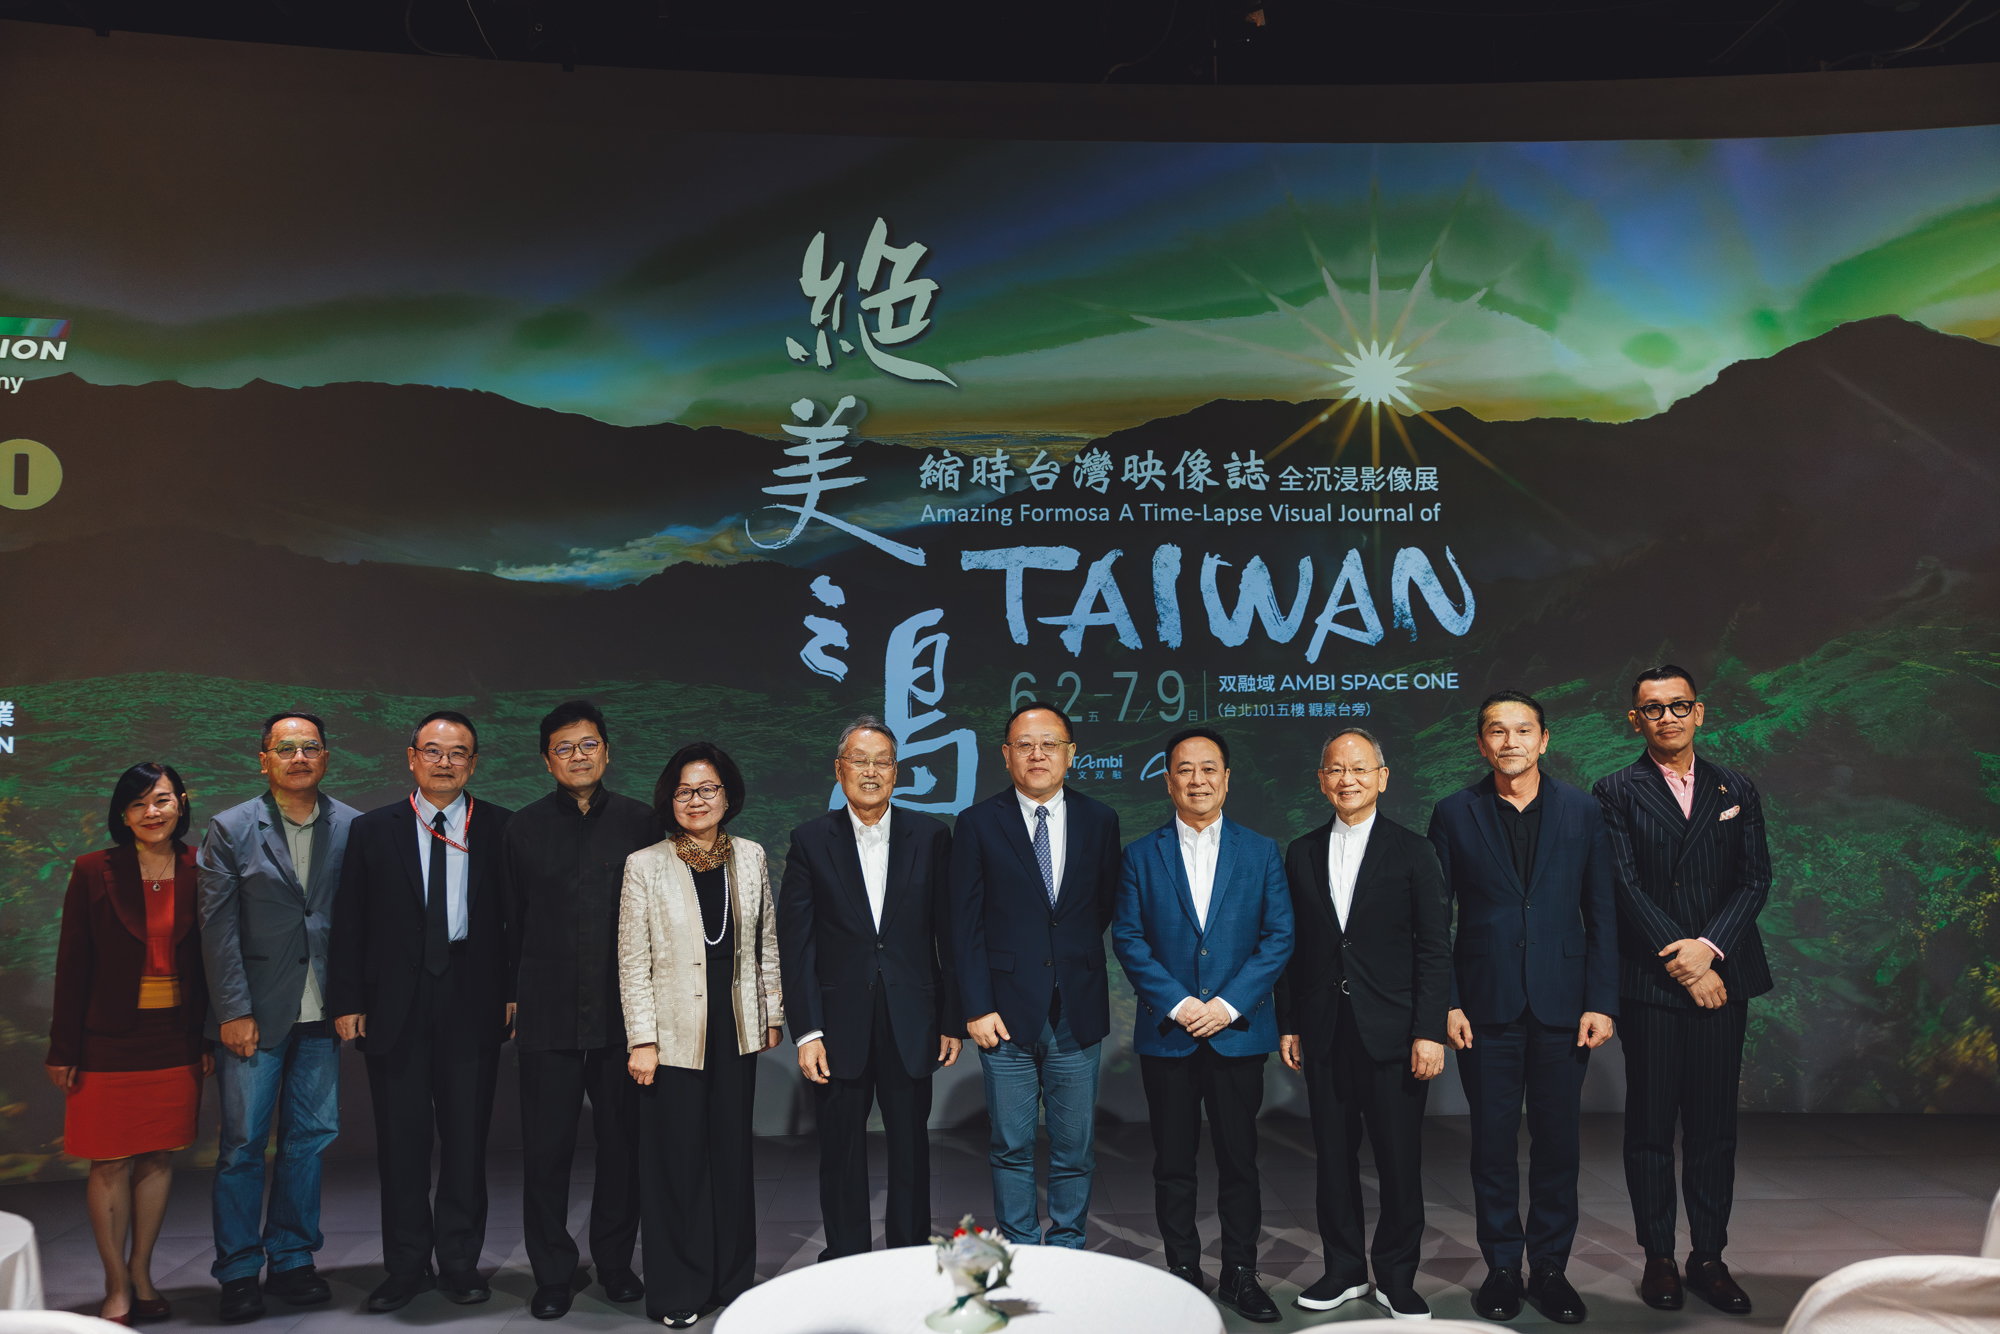 絕 美 之 島 首 映 會 出 席 貴 賓 包 含 藝 文 界 、 科 技 界 及 學 術 界 貴 賓 齊 聚 ， 一 同 支 持 與 鼓 勵 台 灣 的 文 化 科 技 團 隊 